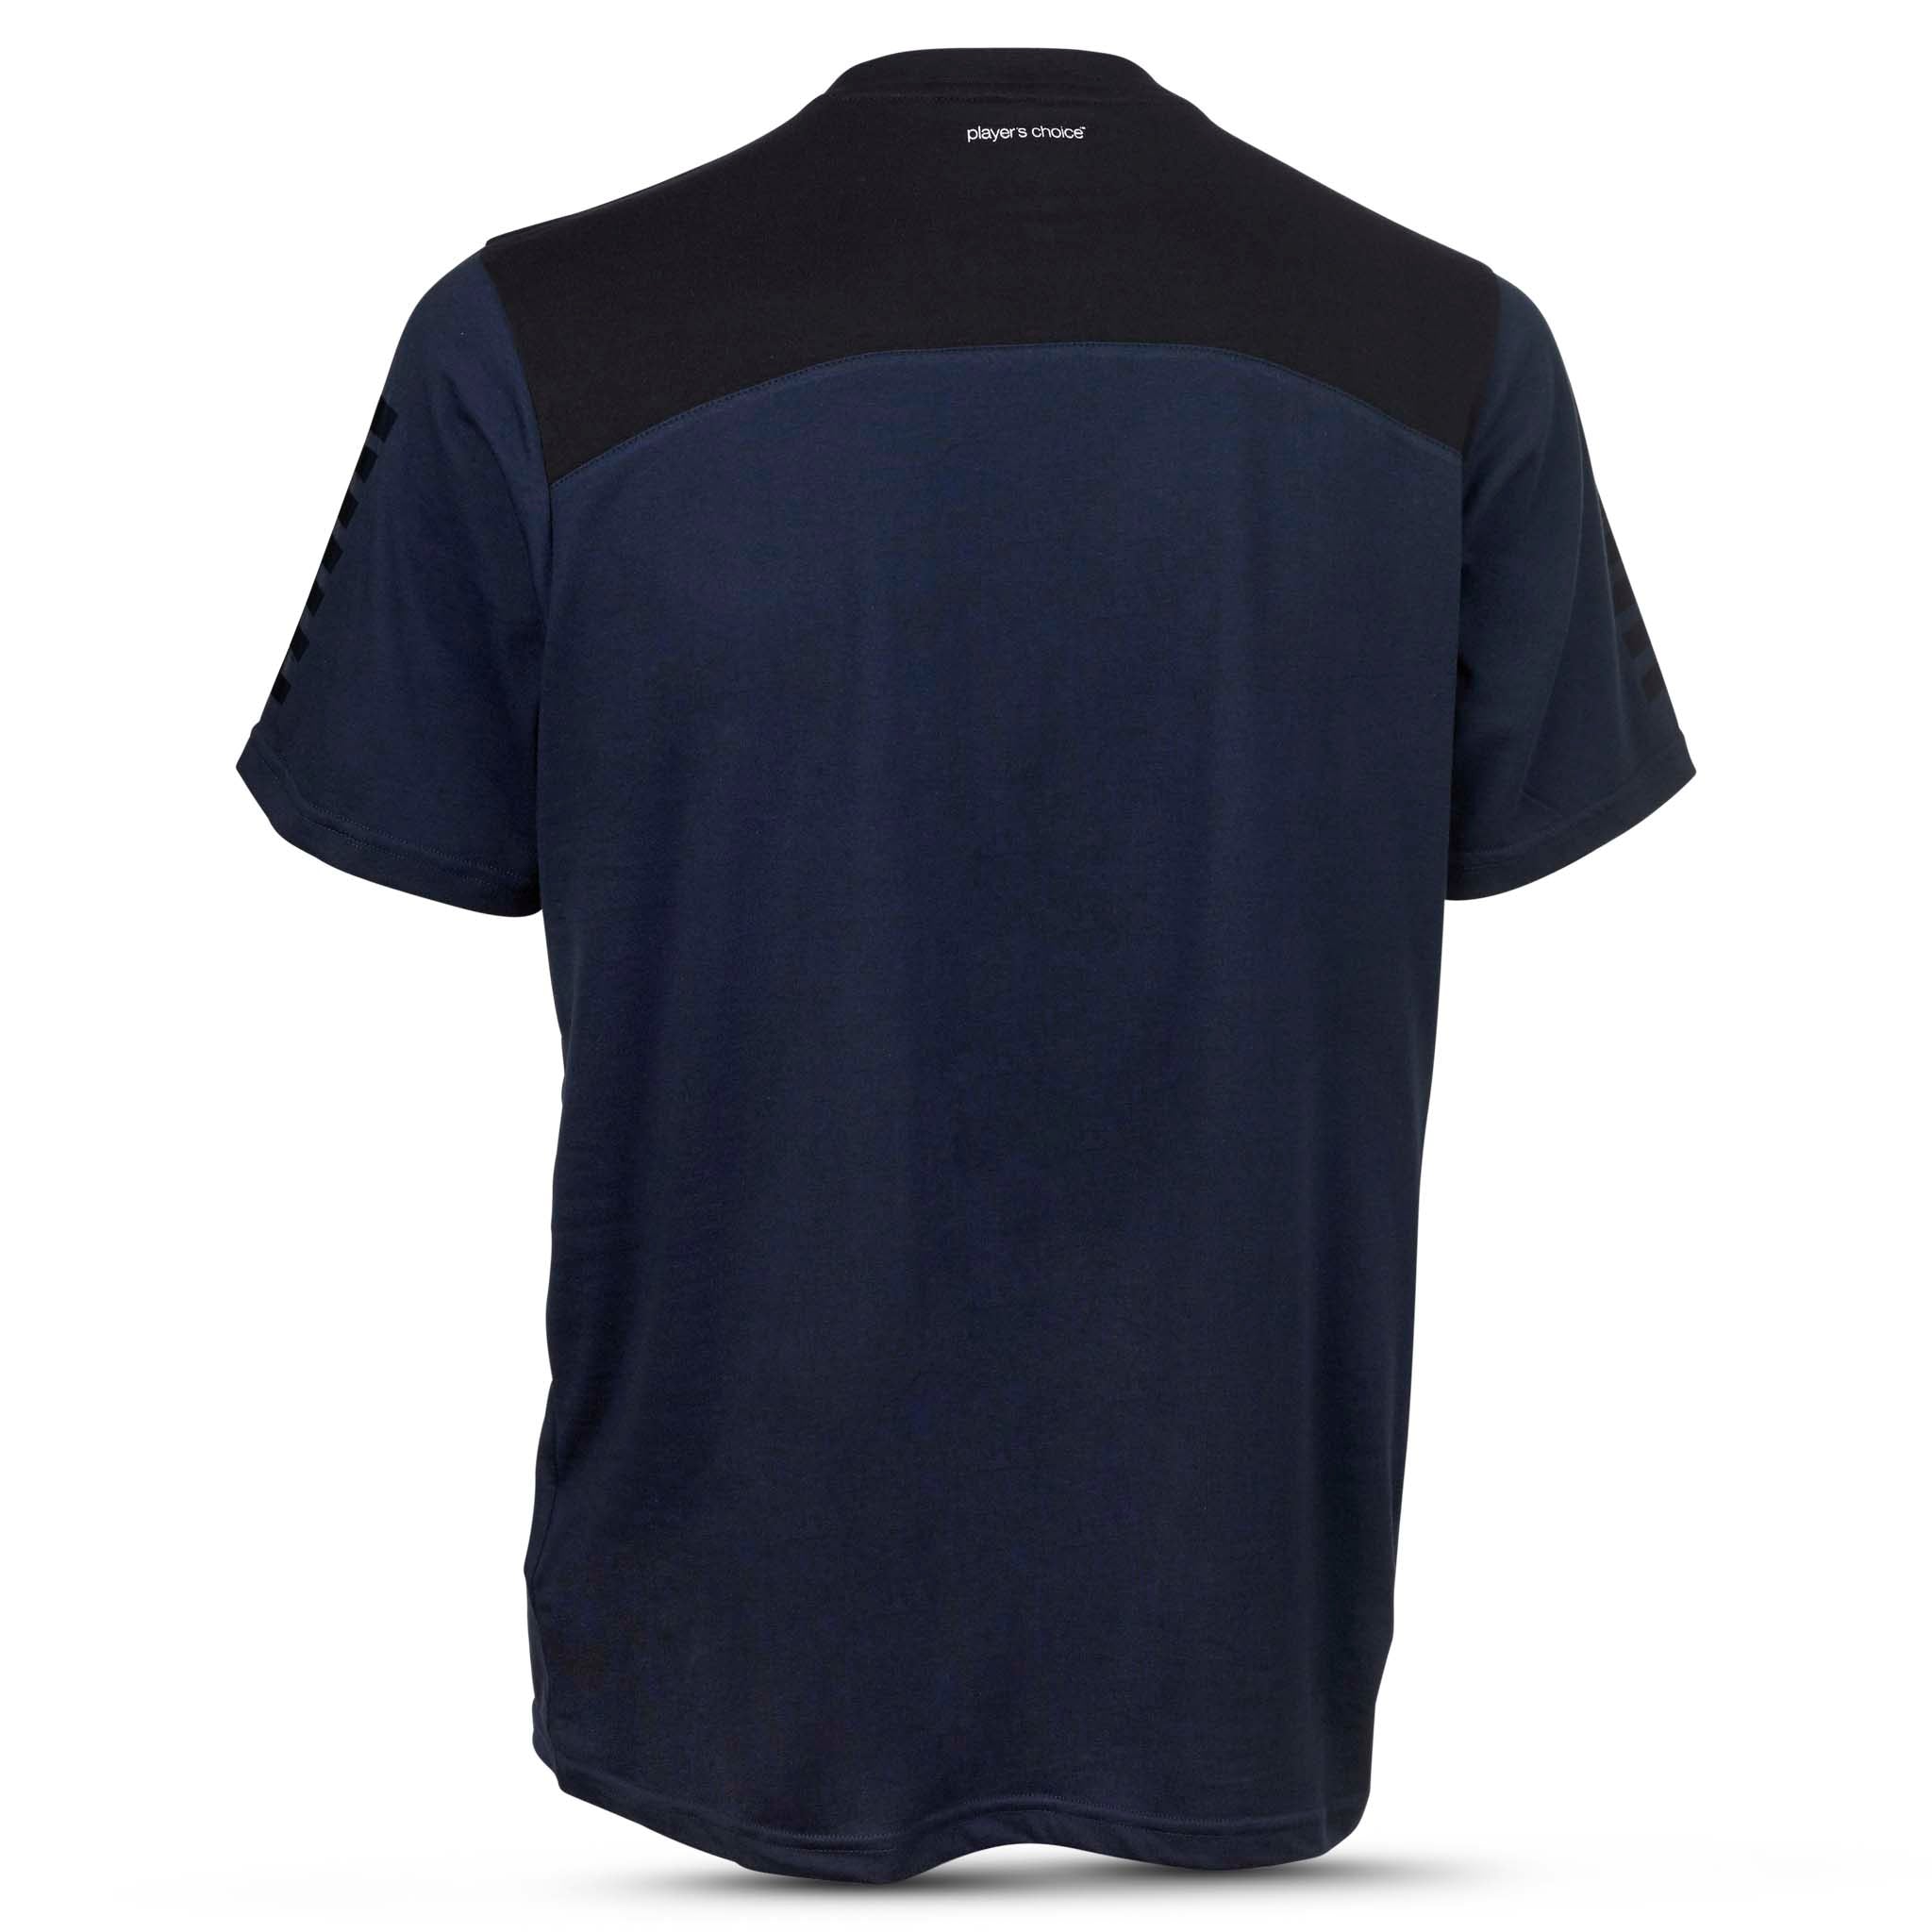 Oxford T-Shirt #farve_marine blå/sort